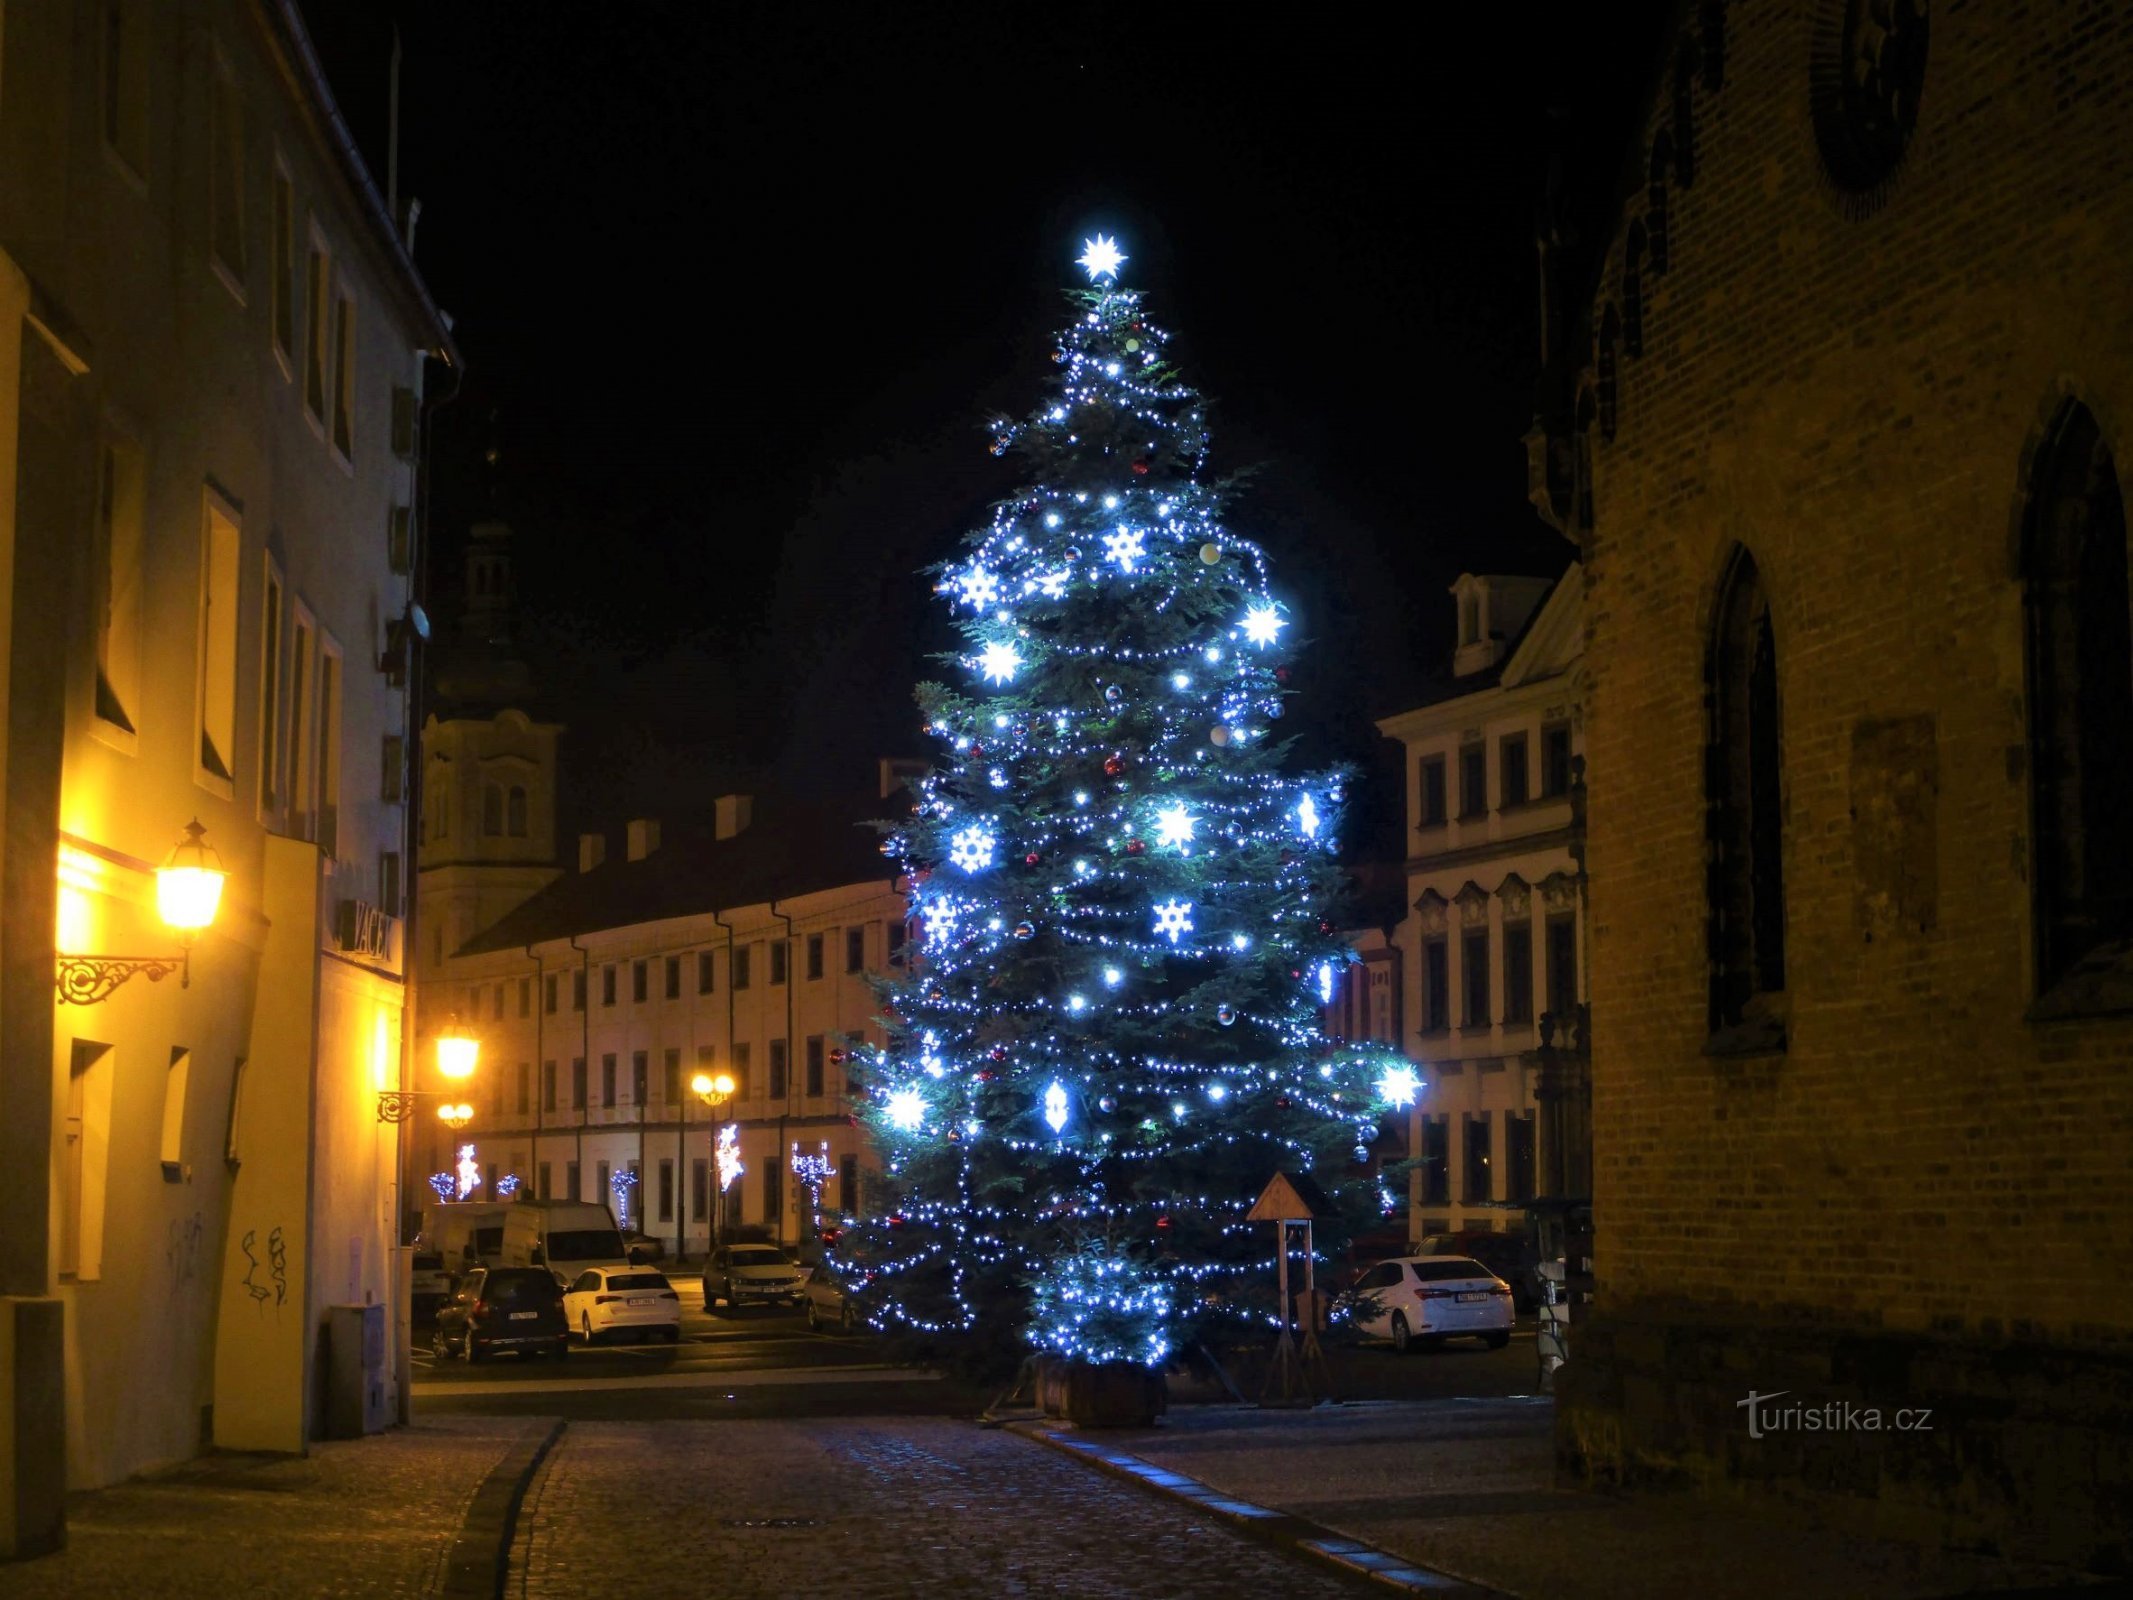 Božično drevo na Velikem trgu (Hradec Králové, 17.12.2021. XNUMX. XNUMX)